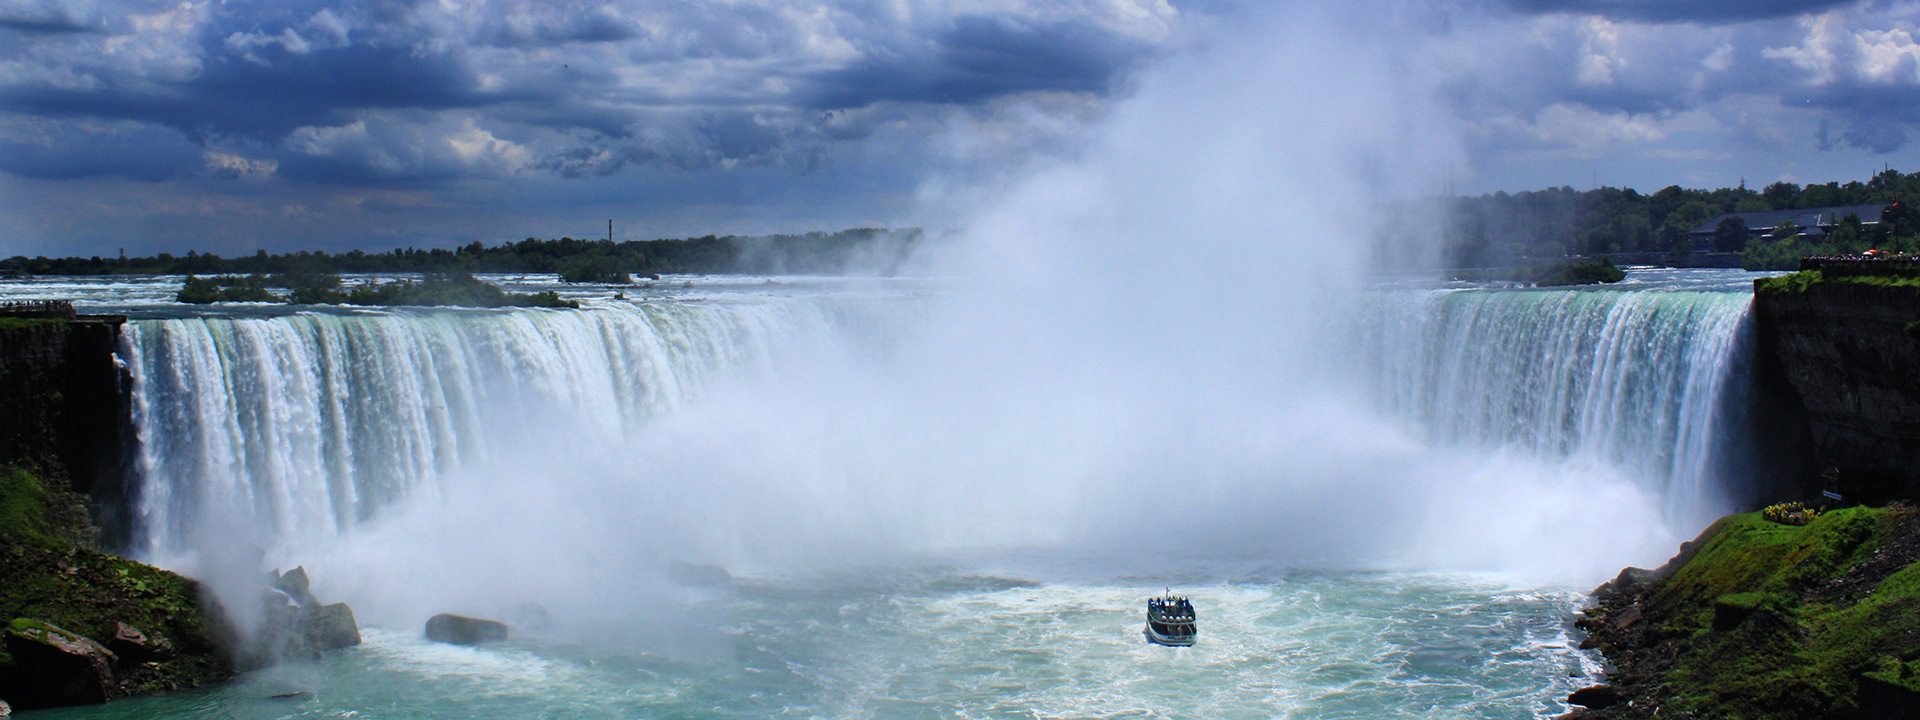 Top 10 things to do at Niagara Falls, Canada